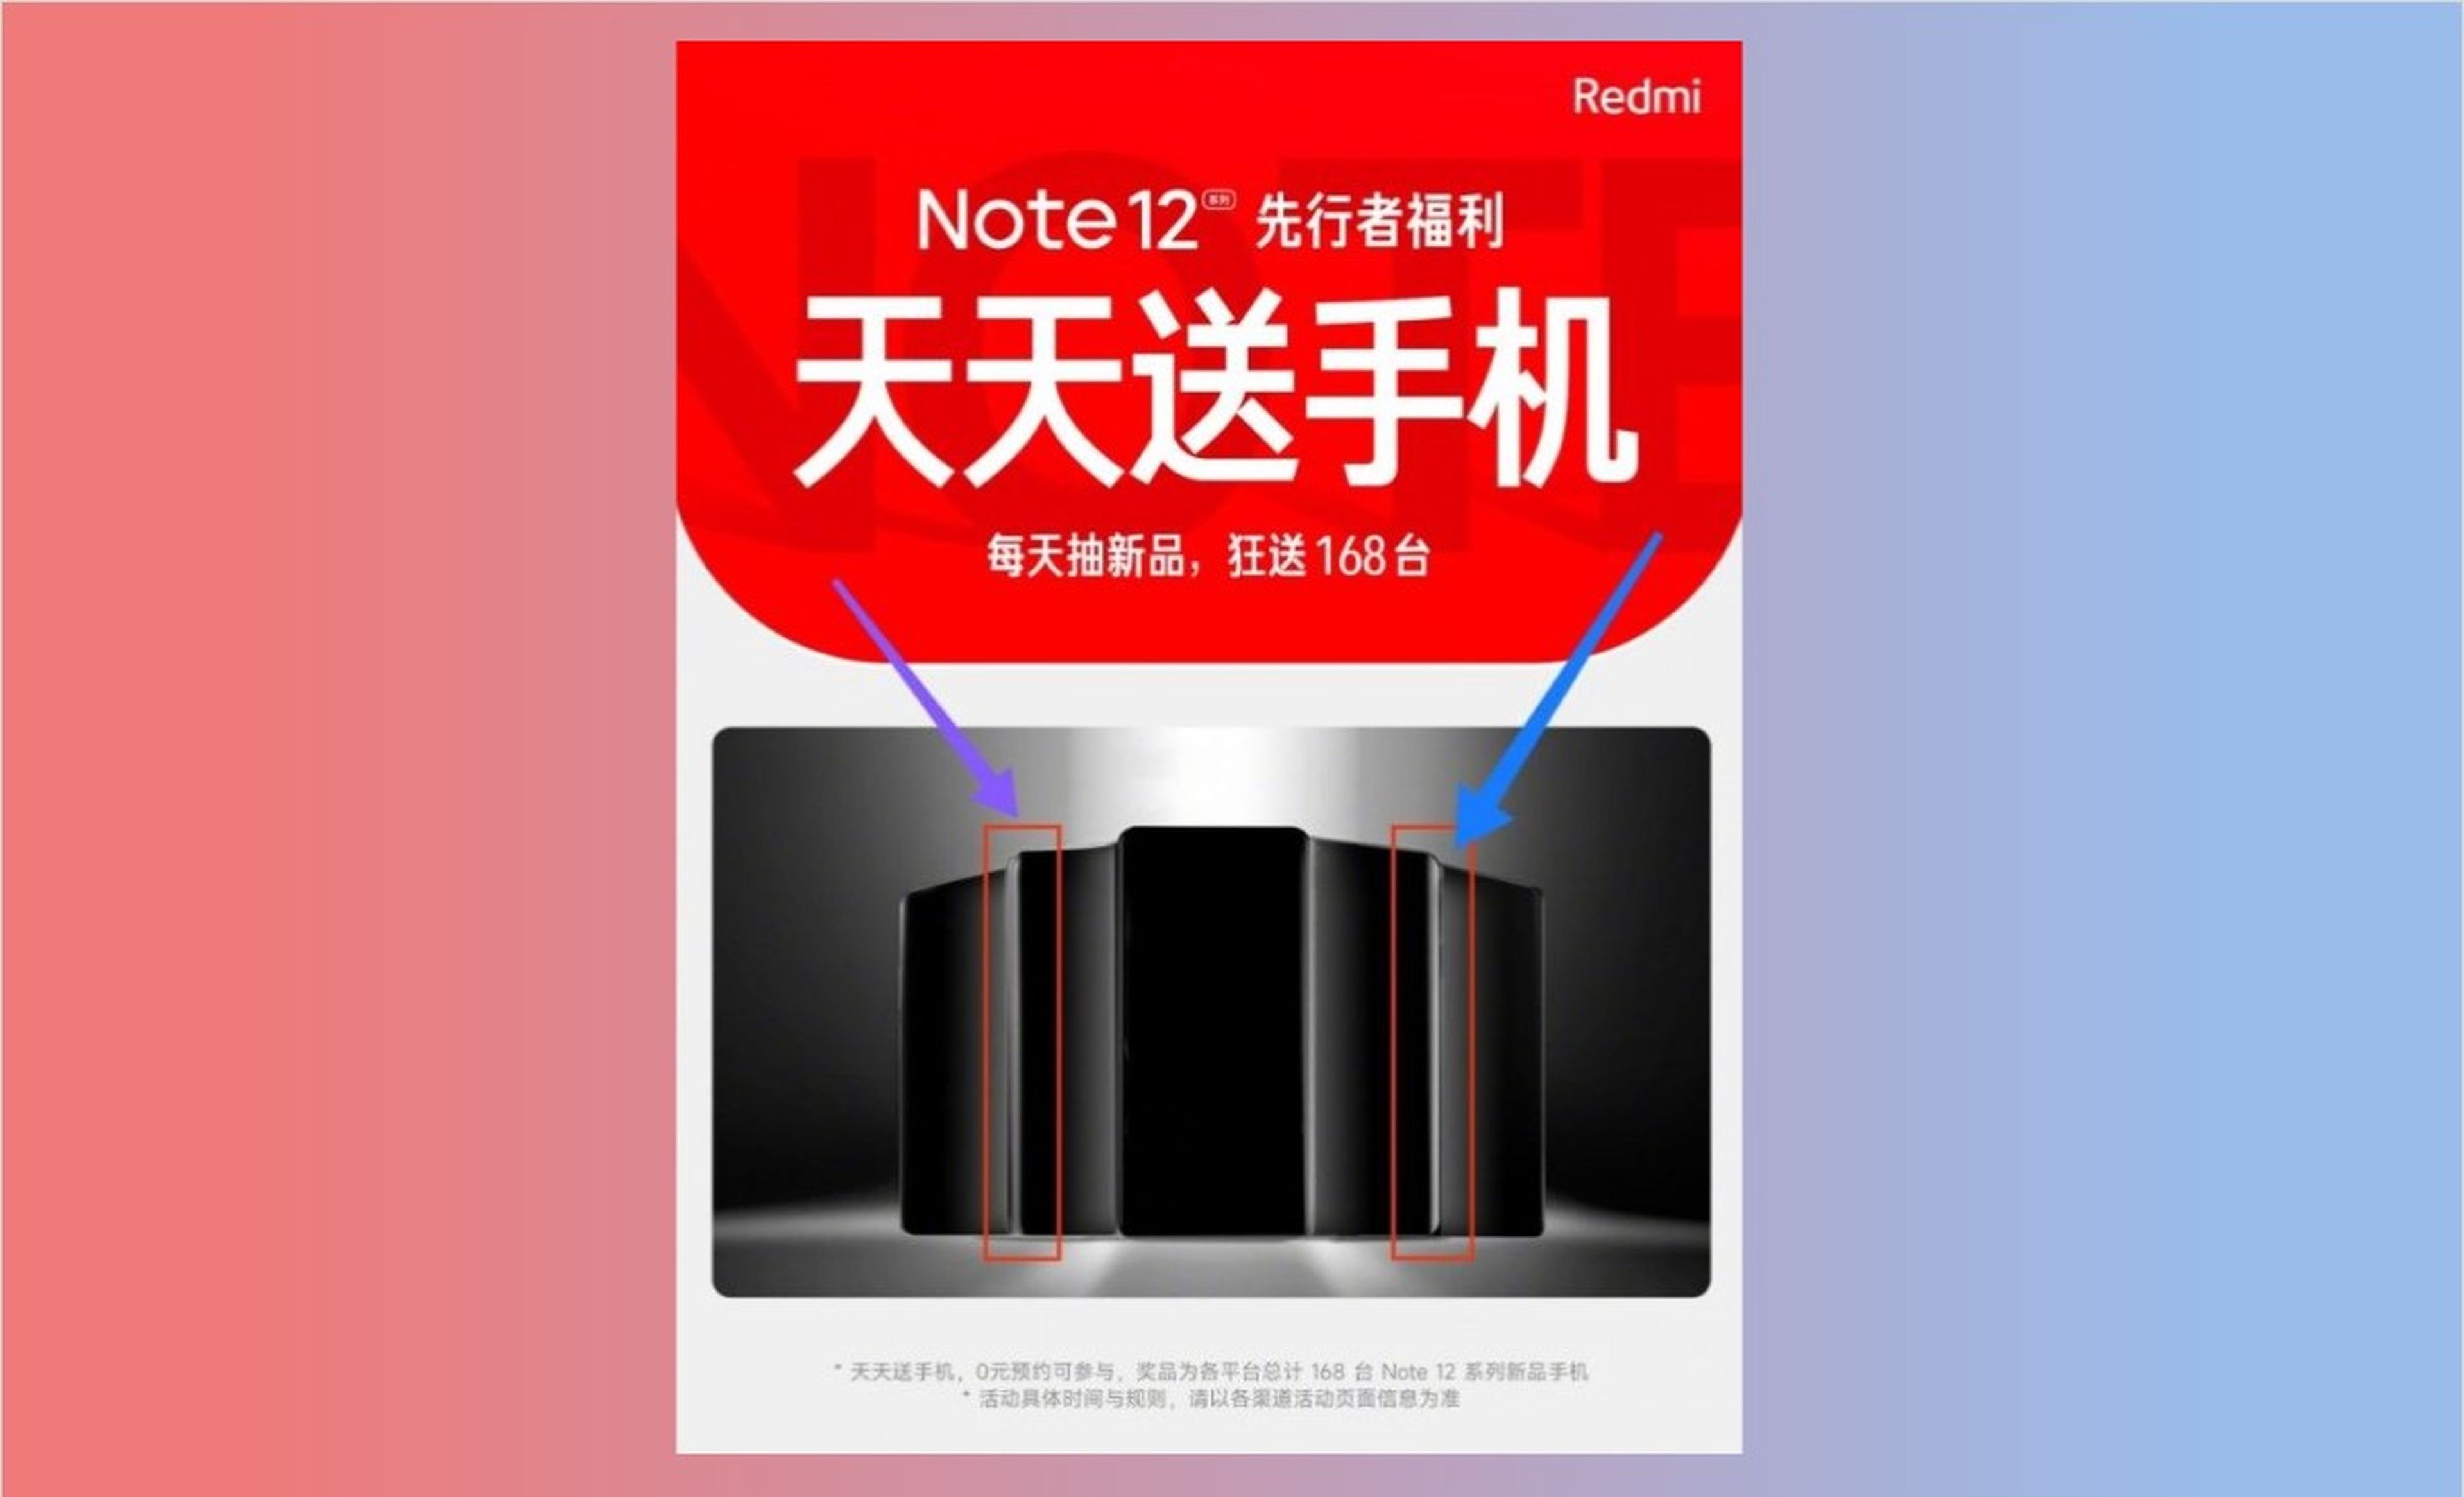 Serie Redmi Note 12: fecha de lanzamiento y algunas de sus especificaciones desveladas